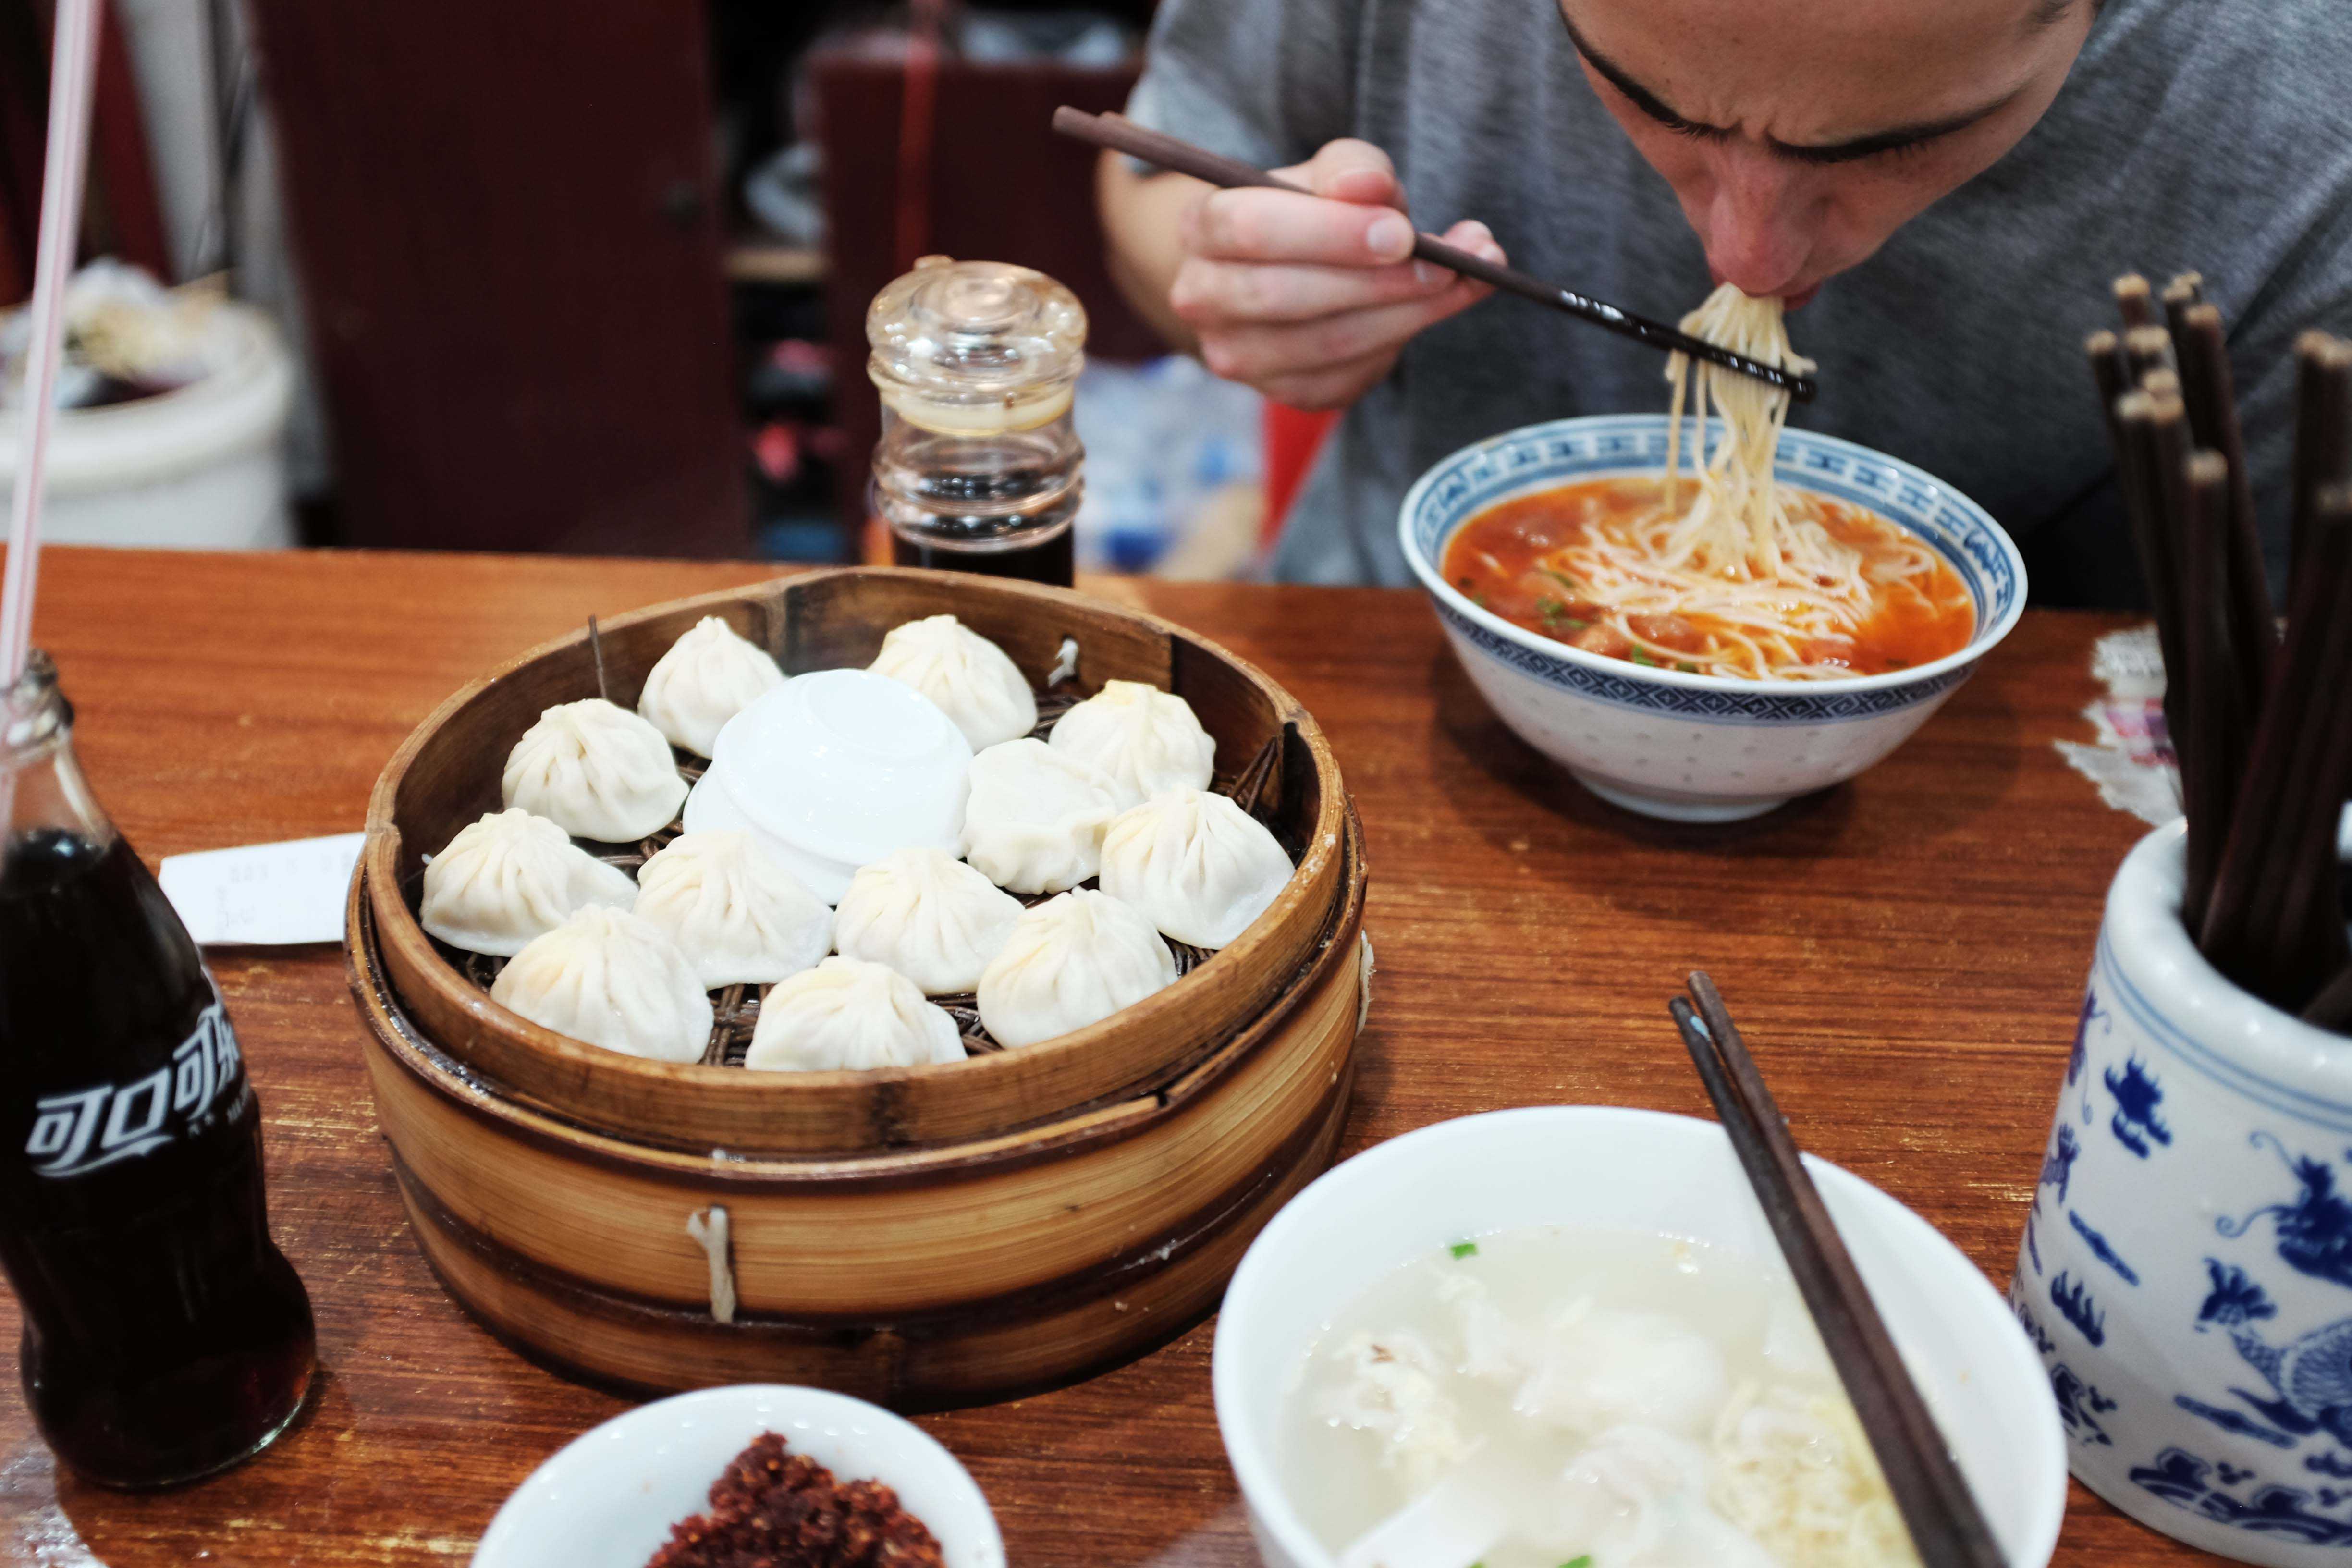 Dumplings in Shanghai, China